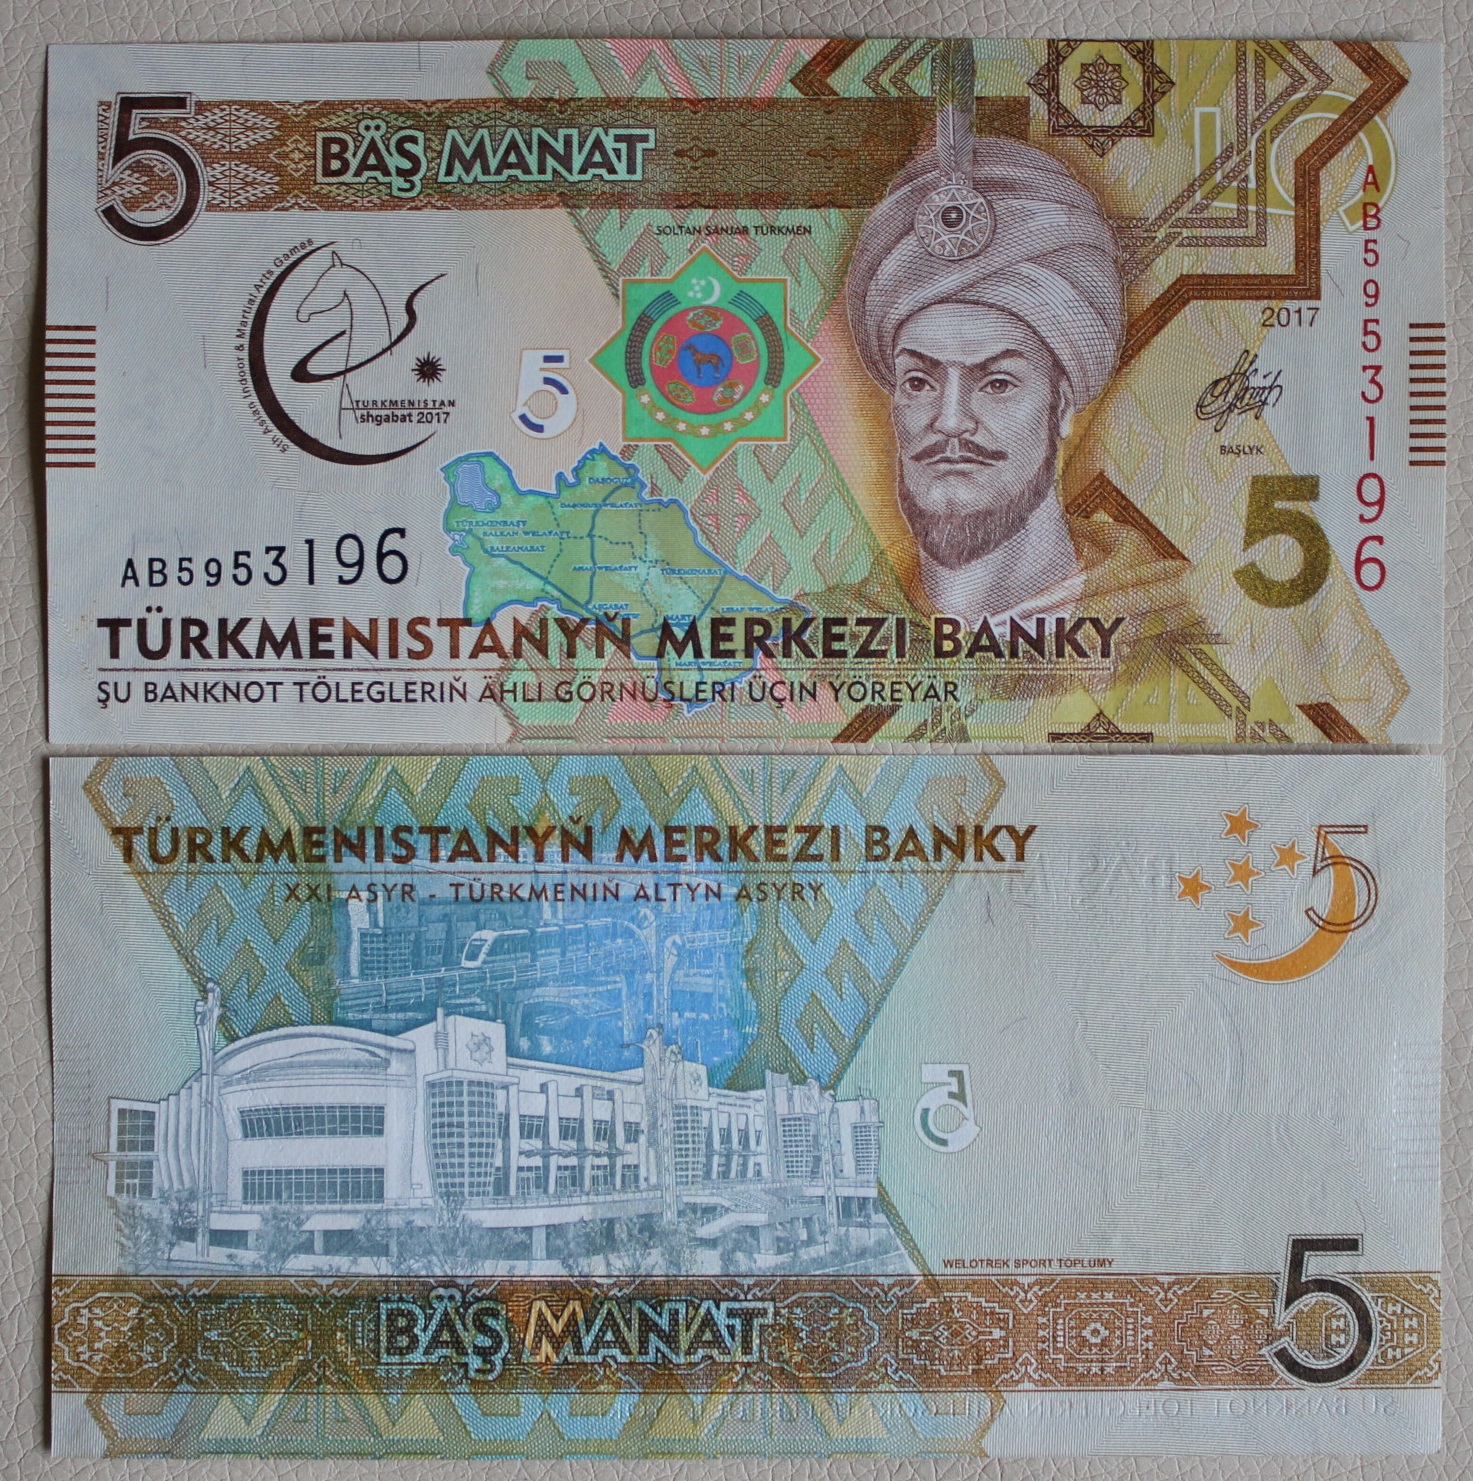 150 манат в рублях. Банкноты Туркмении 5 манат. 1 Манат Туркменистан. Банкнота туркменский манат. Современные банкноты Туркменистана.